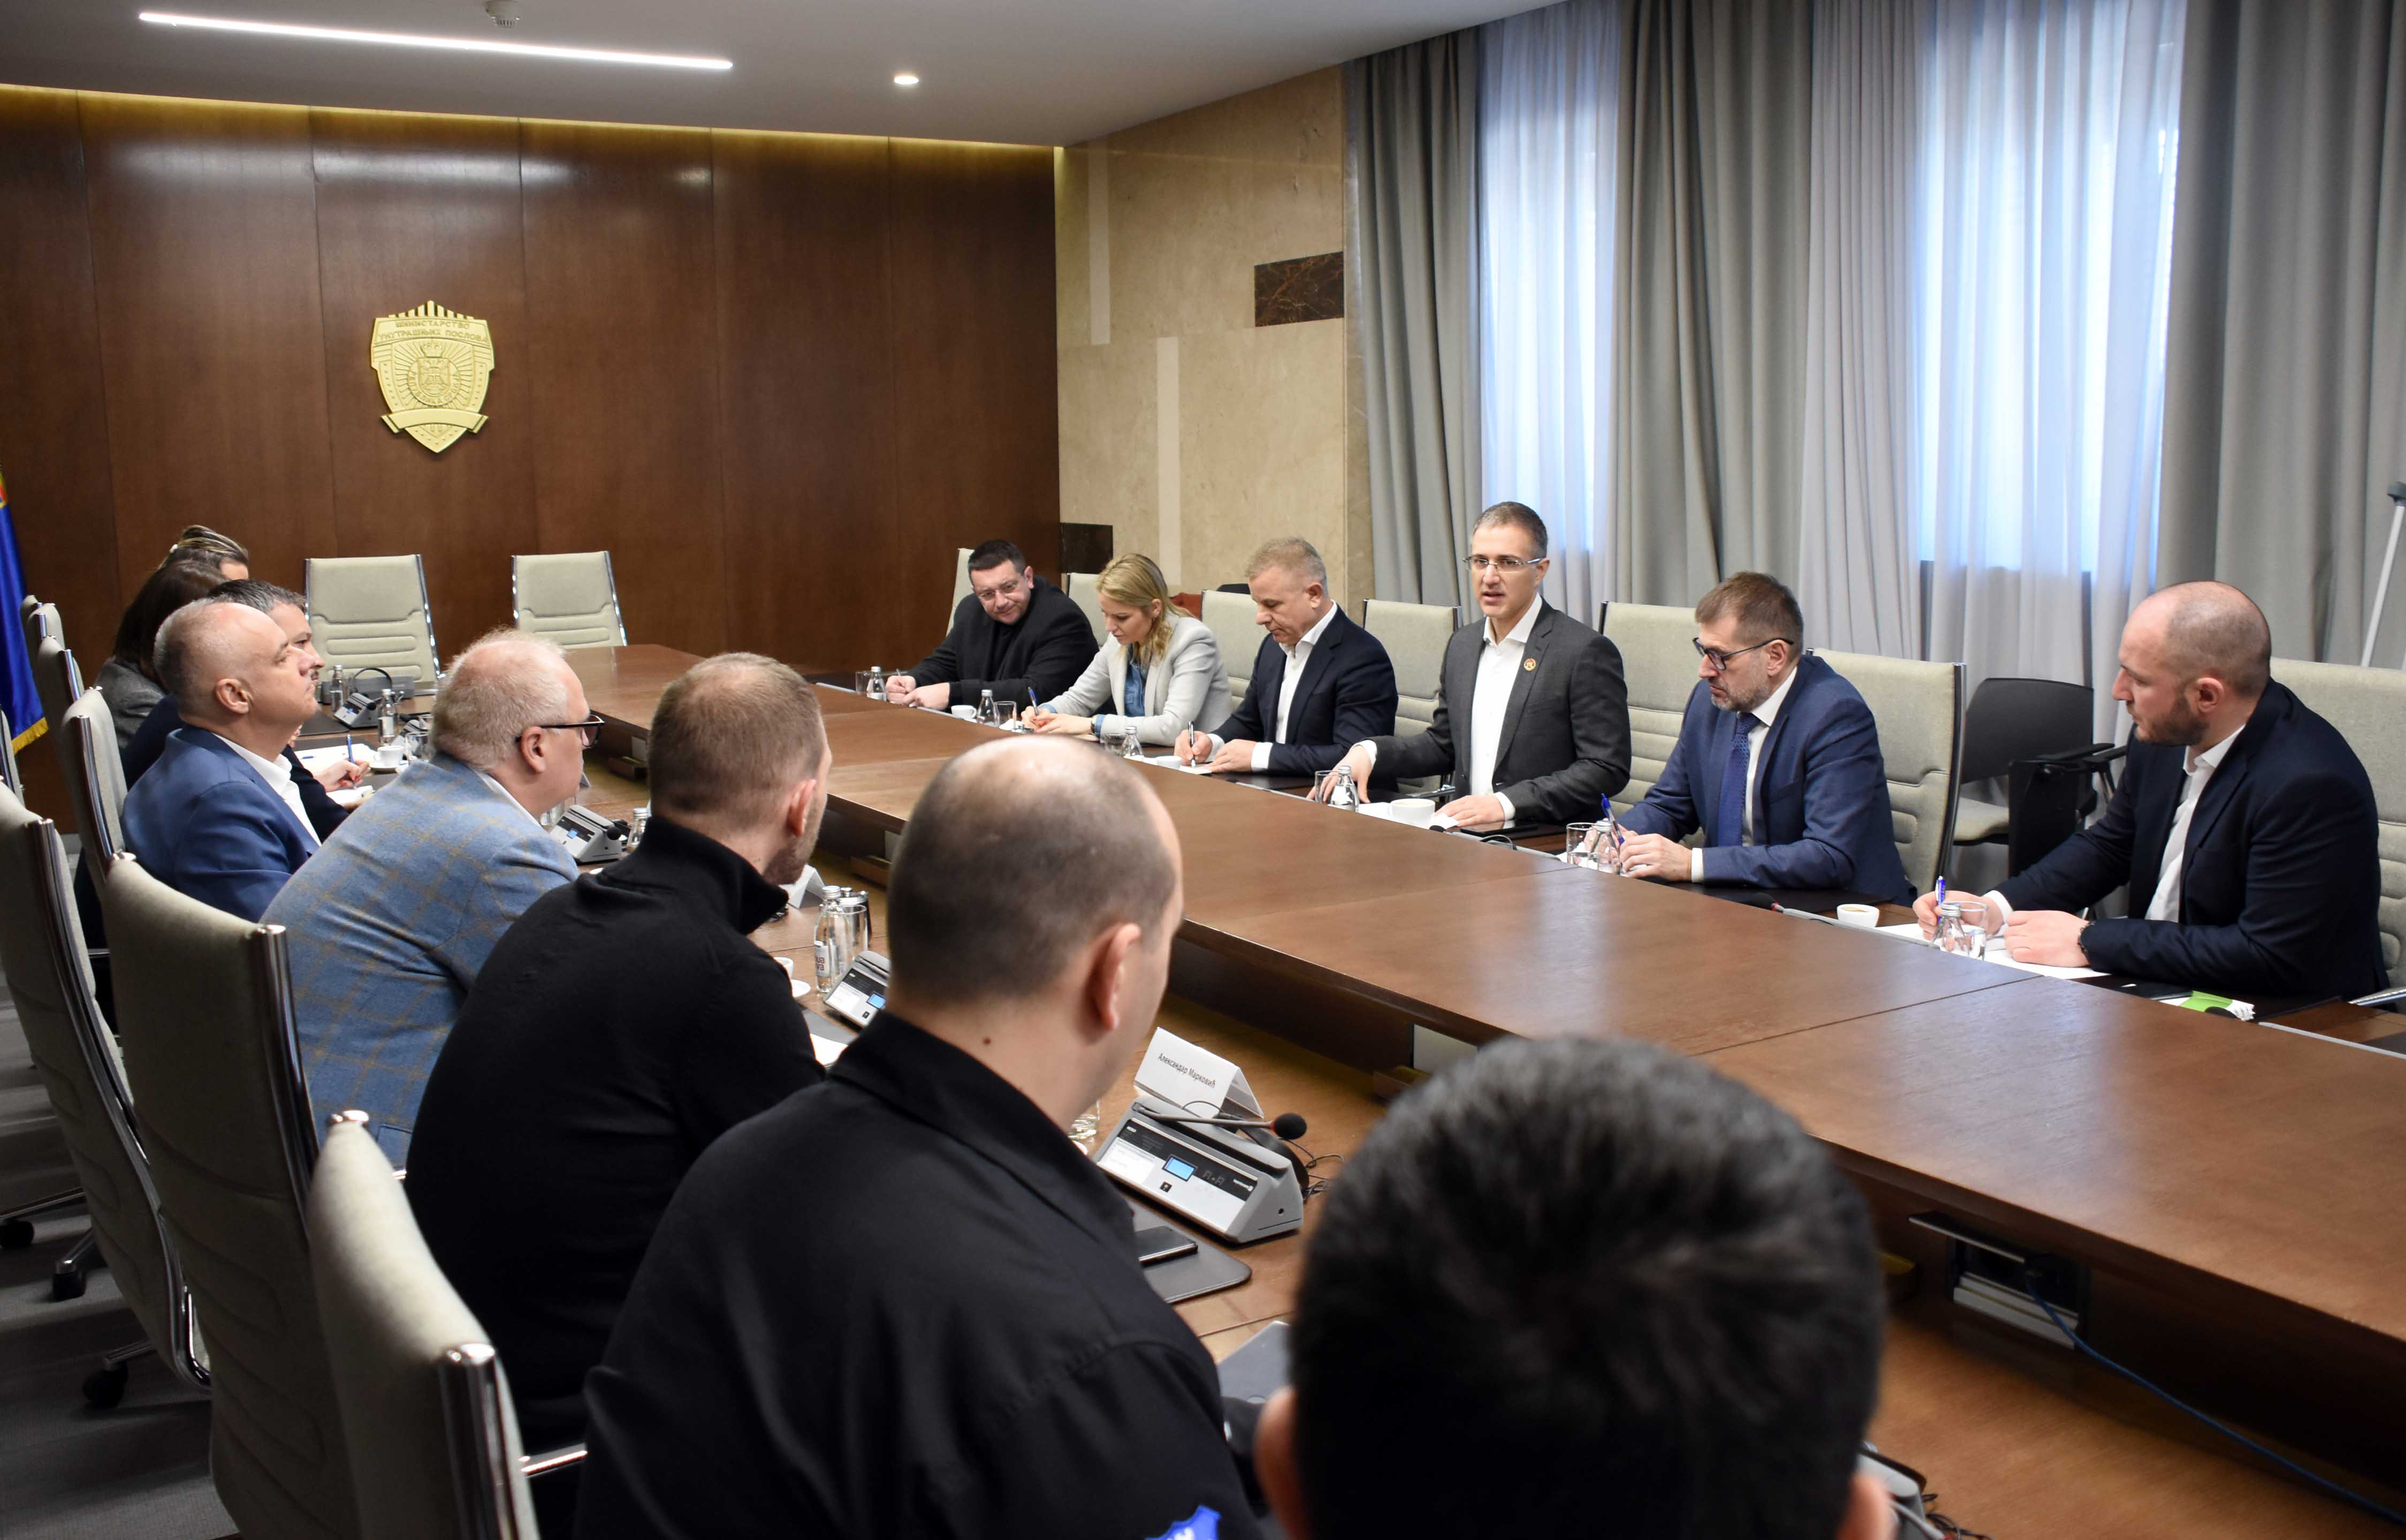 Ministar Stefanović razgovarao sa predstavnicima Grada Beograda u vezi sa merama koje će preduzeti u cilјu pomoći najstarijim građanima